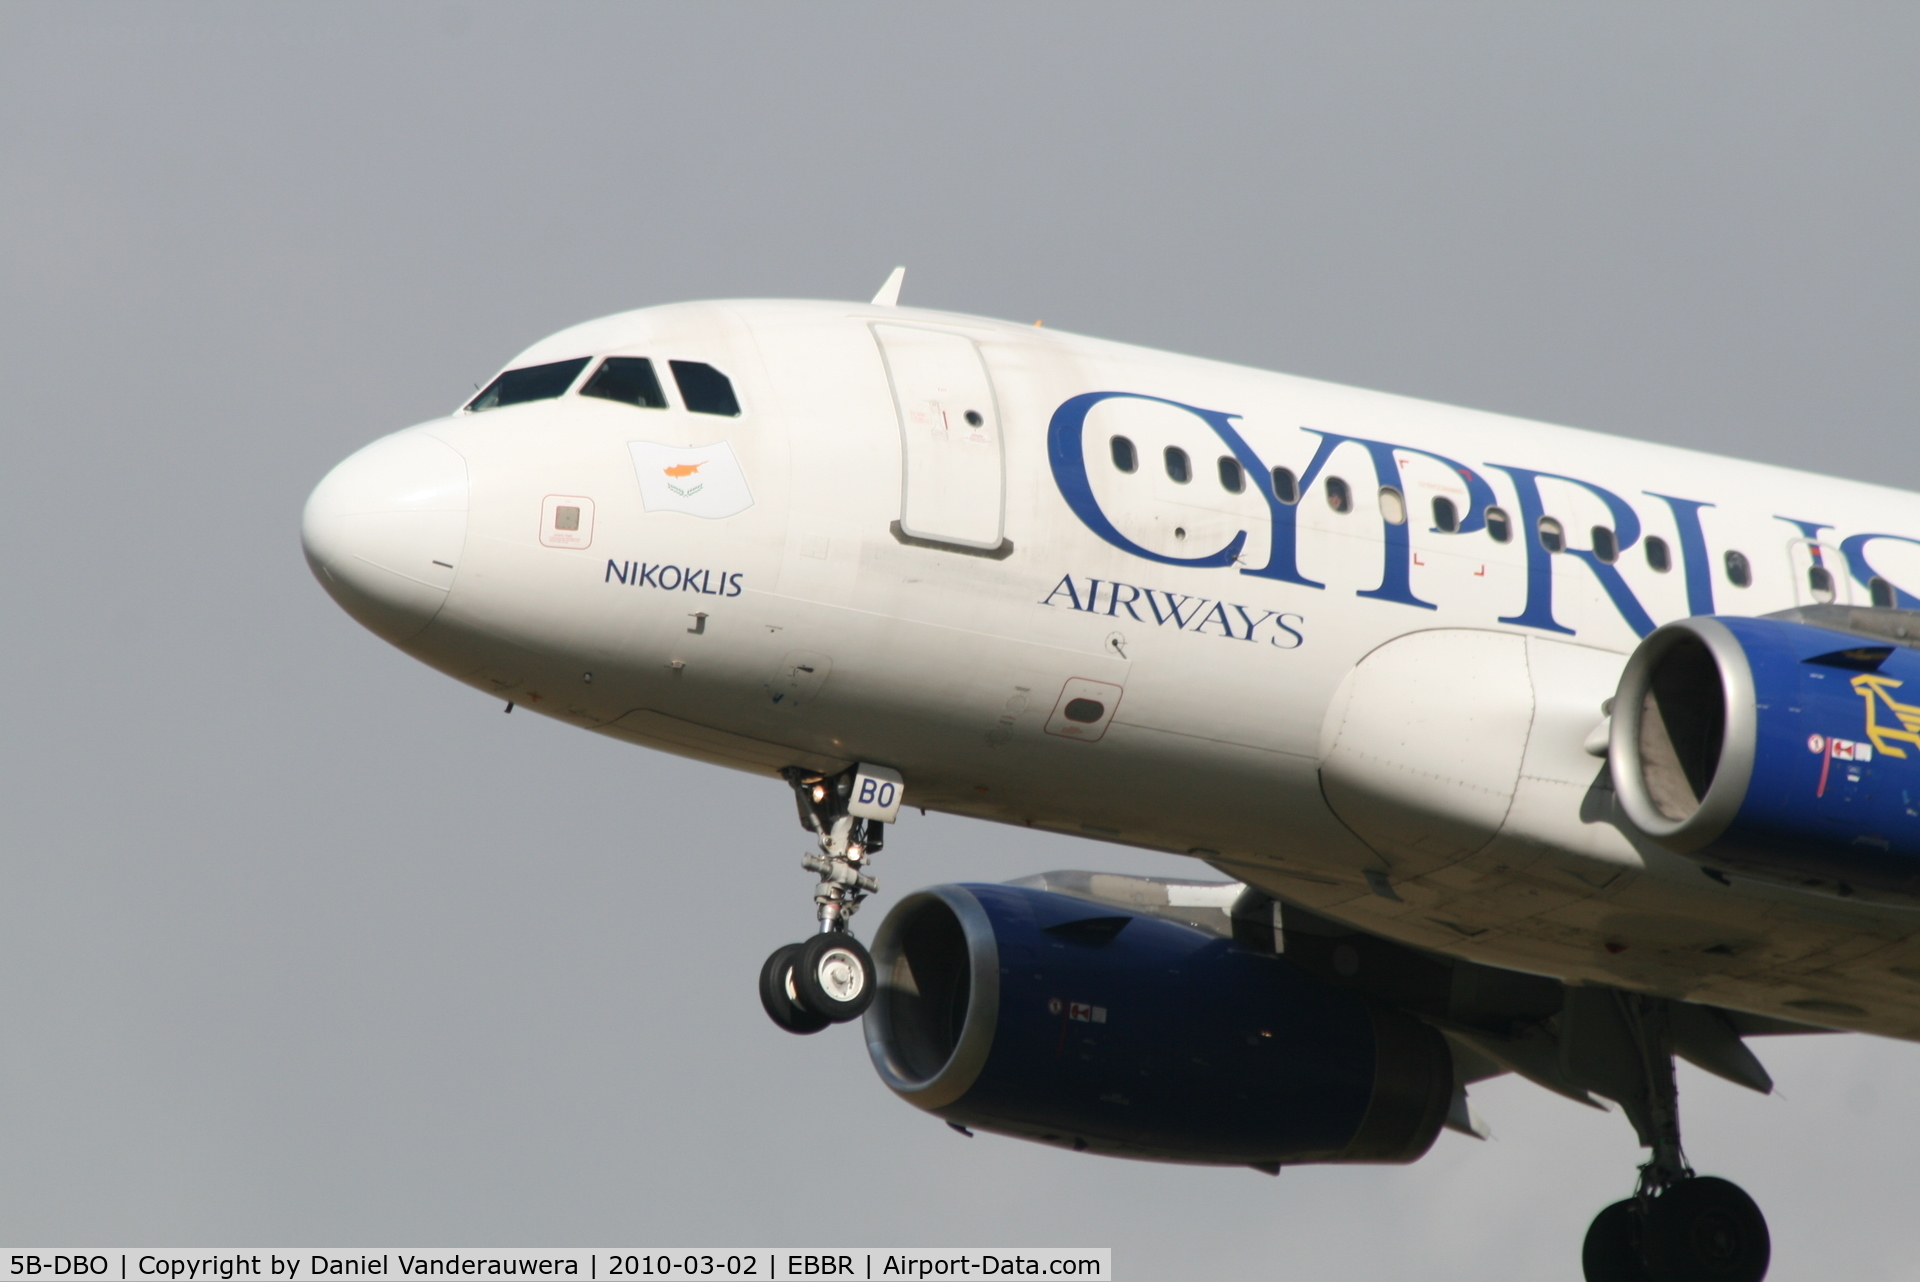 5B-DBO, 2002 Airbus A319-132 C/N 1729, Arrival of flight CY334 to RWY 25L